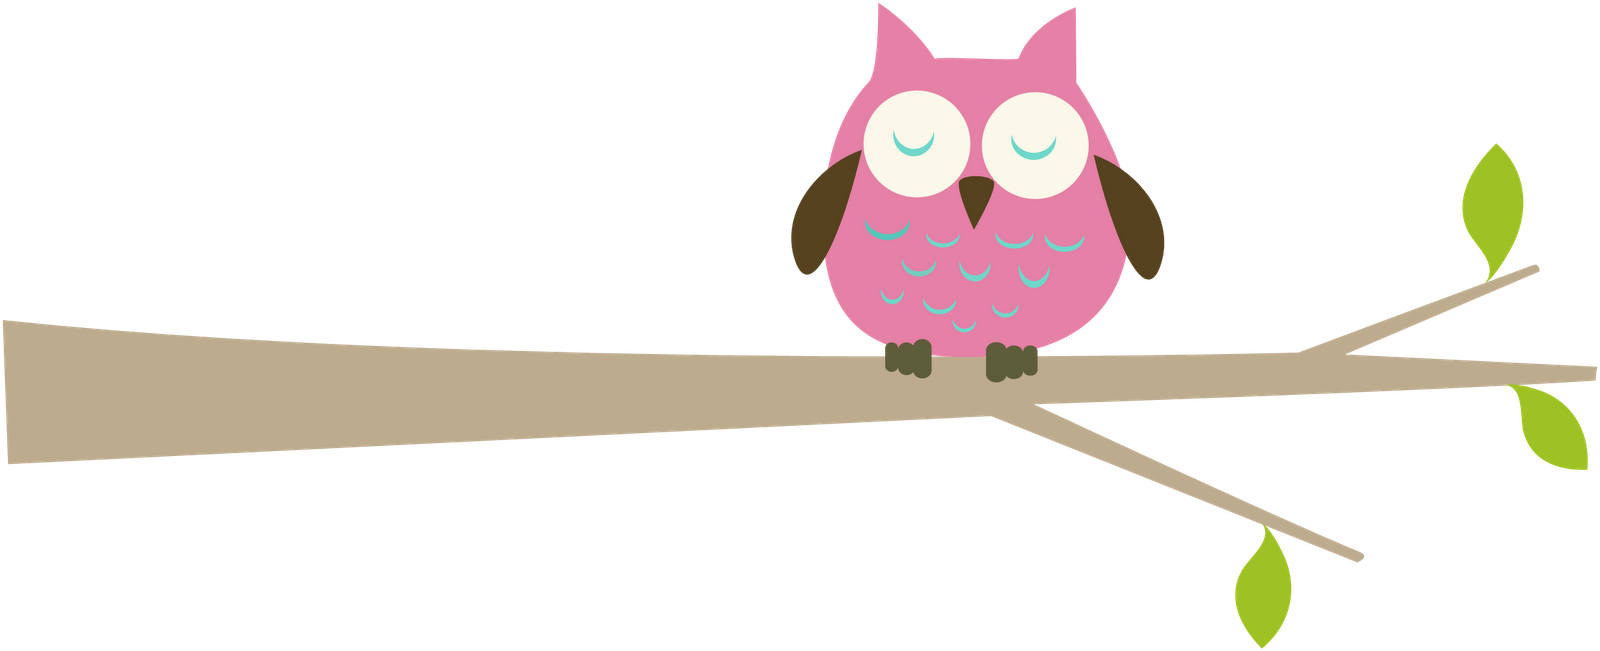 Owl Borders Clip Art   Cliparts Co